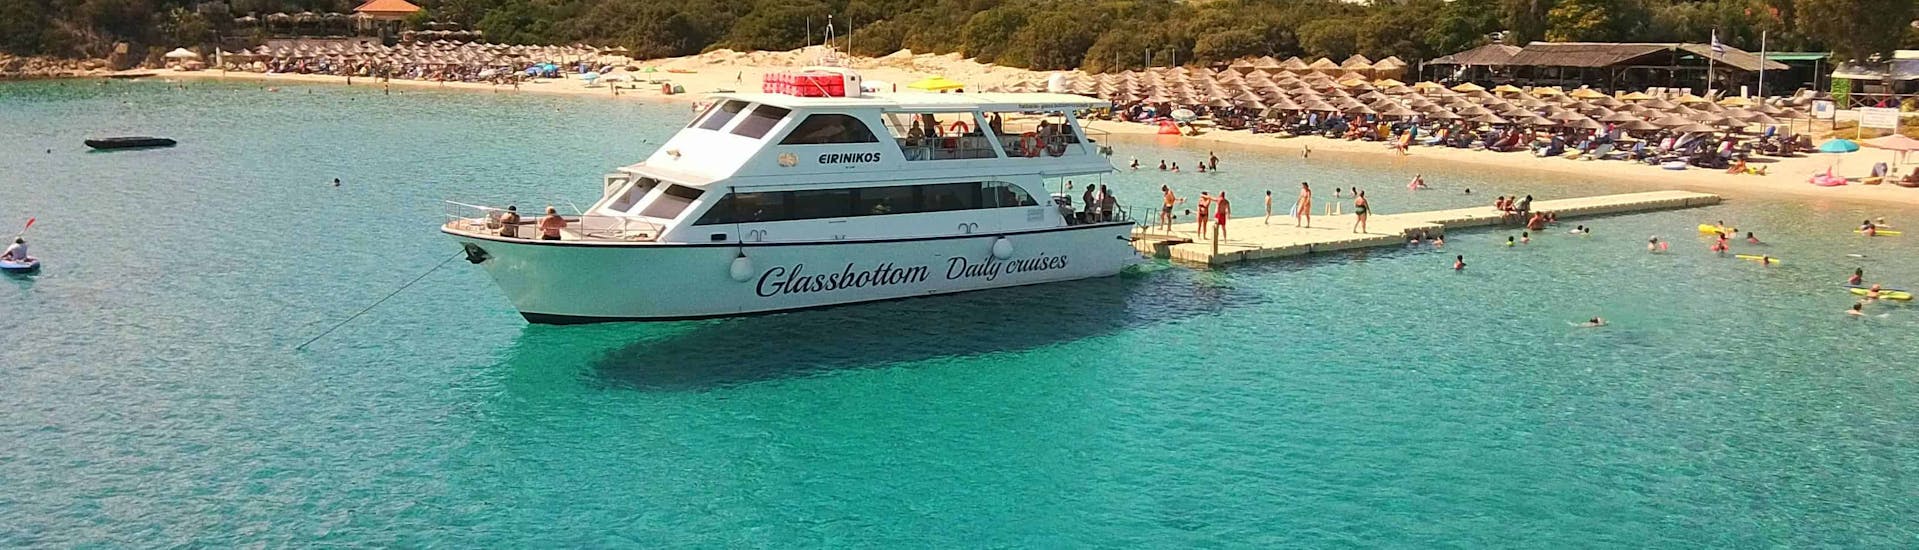 Landschap van Chalkidiki met boten in het blauwe water tussen de eilanden tijdens Boottocht naar Vourvourou en het eiland Ammouliani met Barbecue en snorkelen met Eirinikos Glassbottom Daily & Private Cruises.